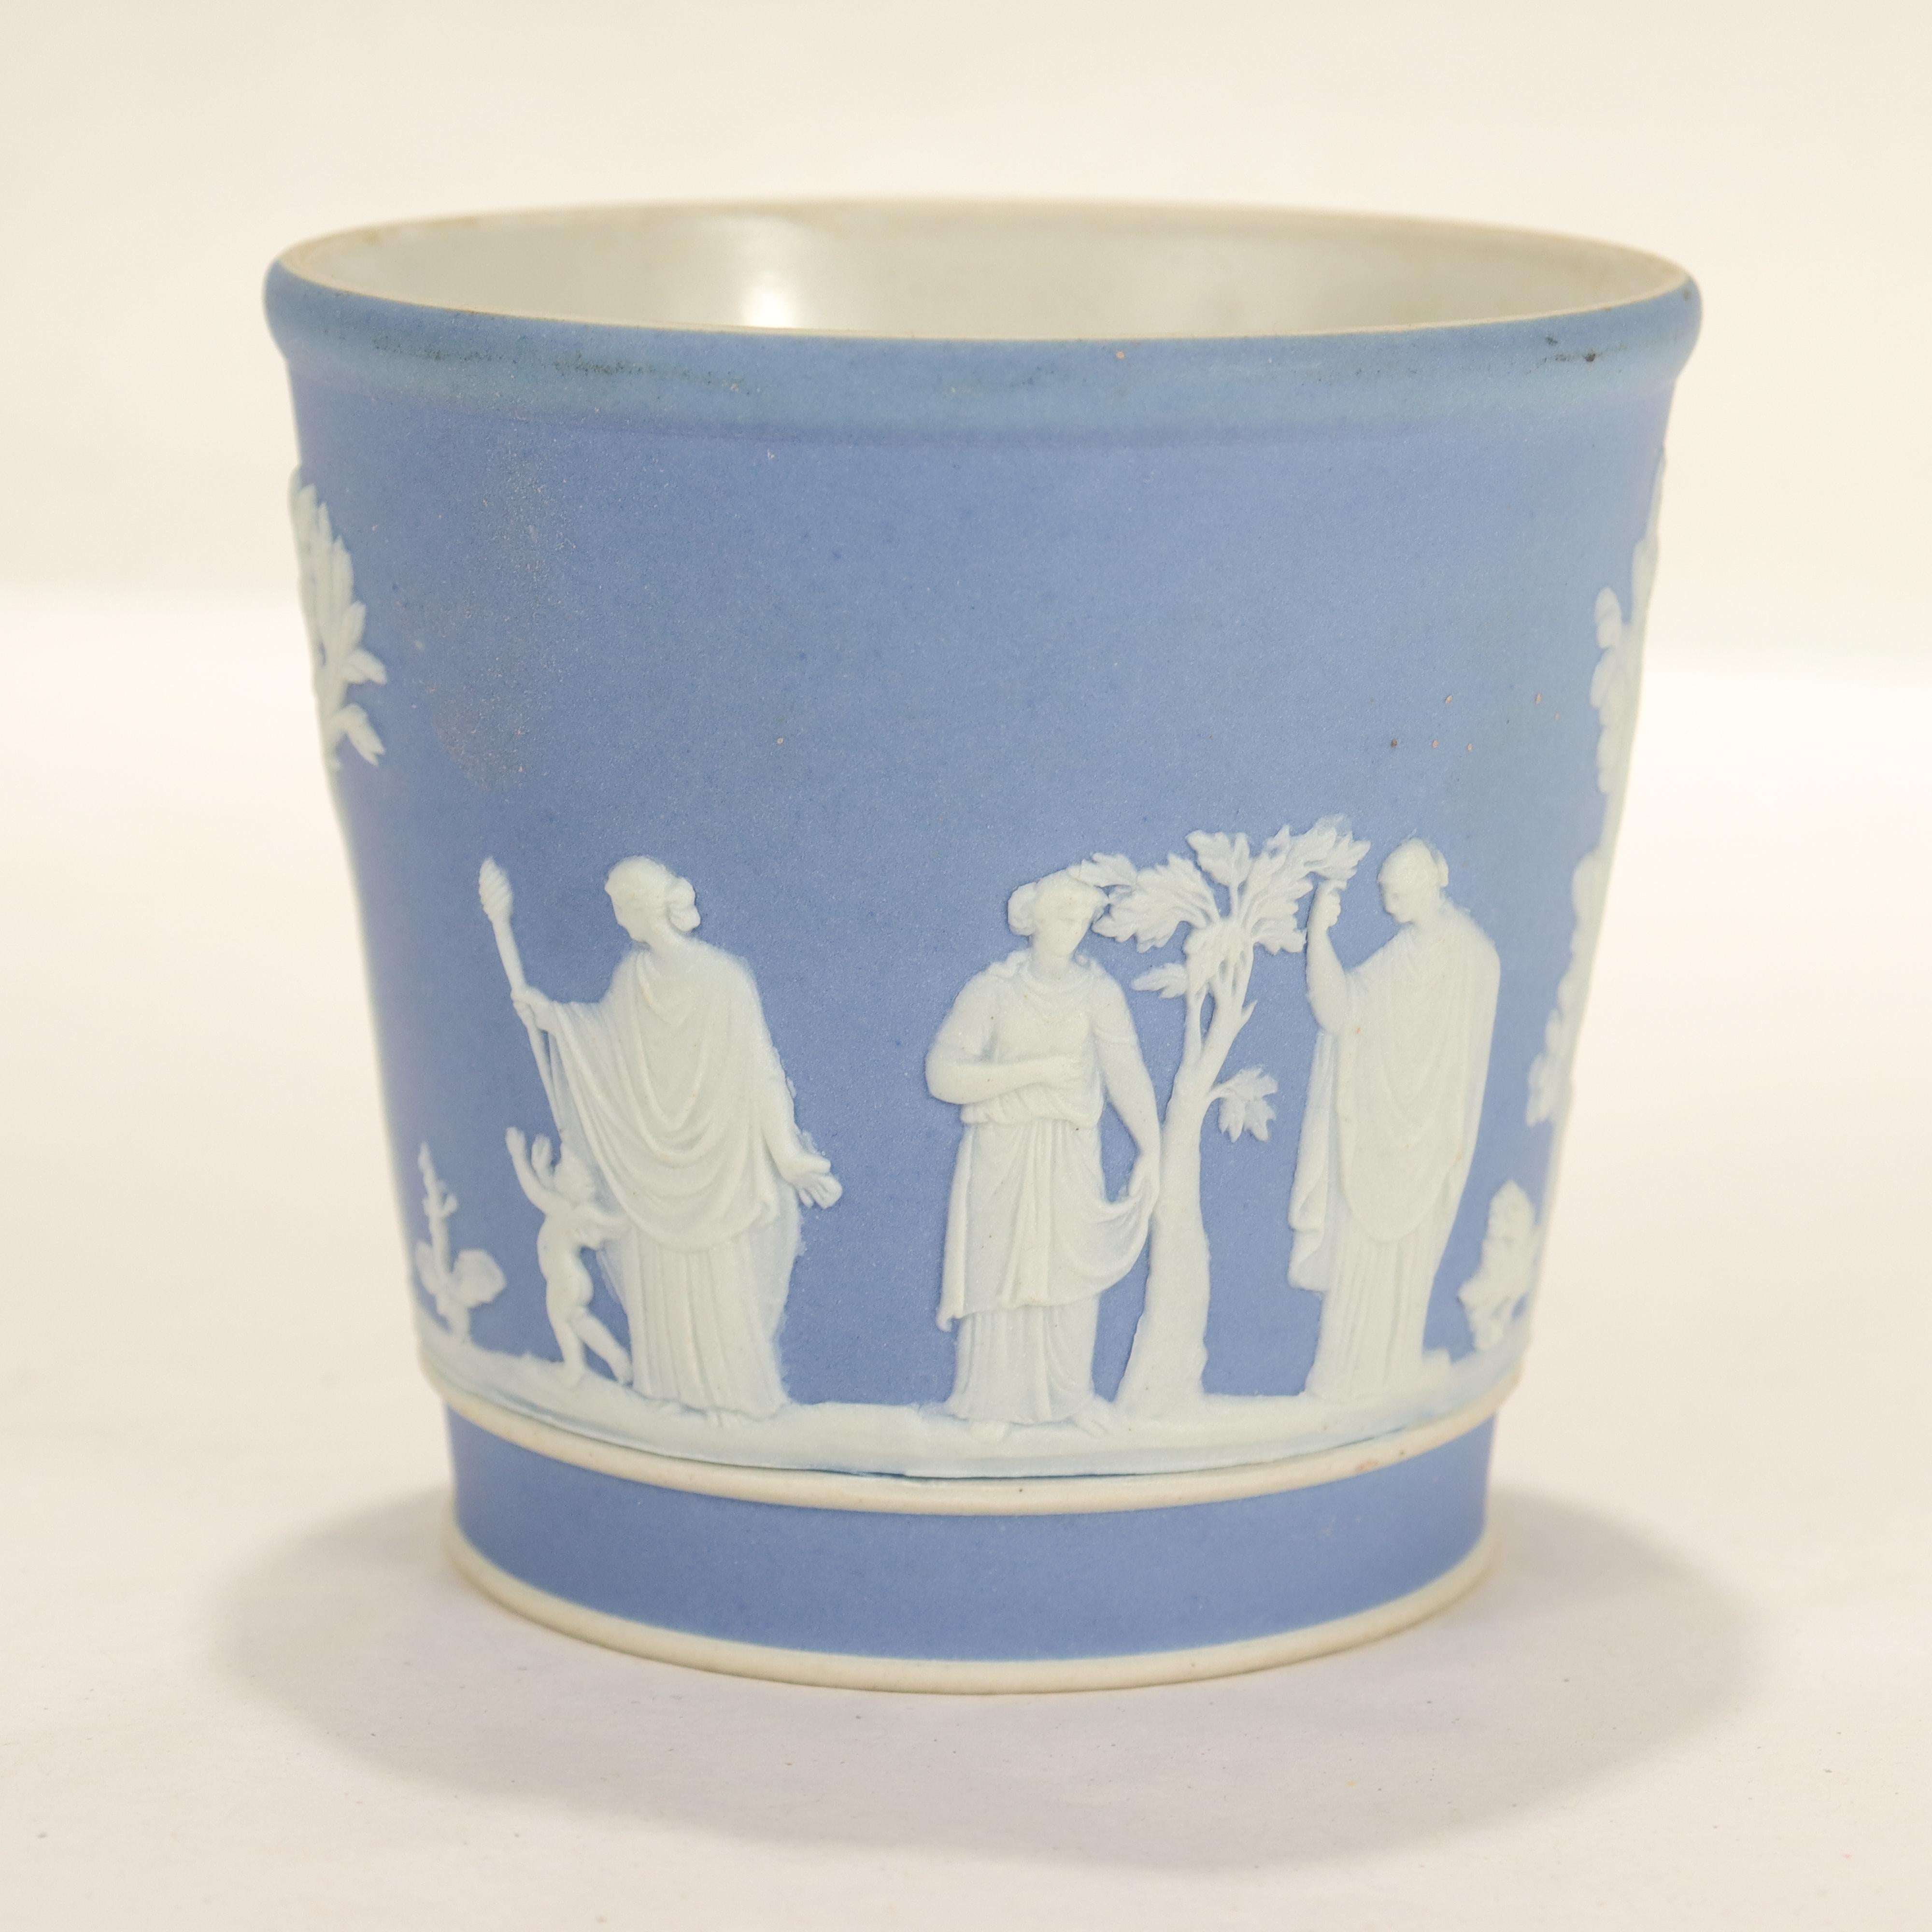 Ein feiner antiker Becher oder eine Tasse aus Jaspis.

In Wedgwood-Blau mit weißem Reliefdekor, das Männer, Frauen, Kinder und Bäume im klassizistischen Stil darstellt.

Wir nehmen an, dass es als Becher oder Trinkgefäß verwendet